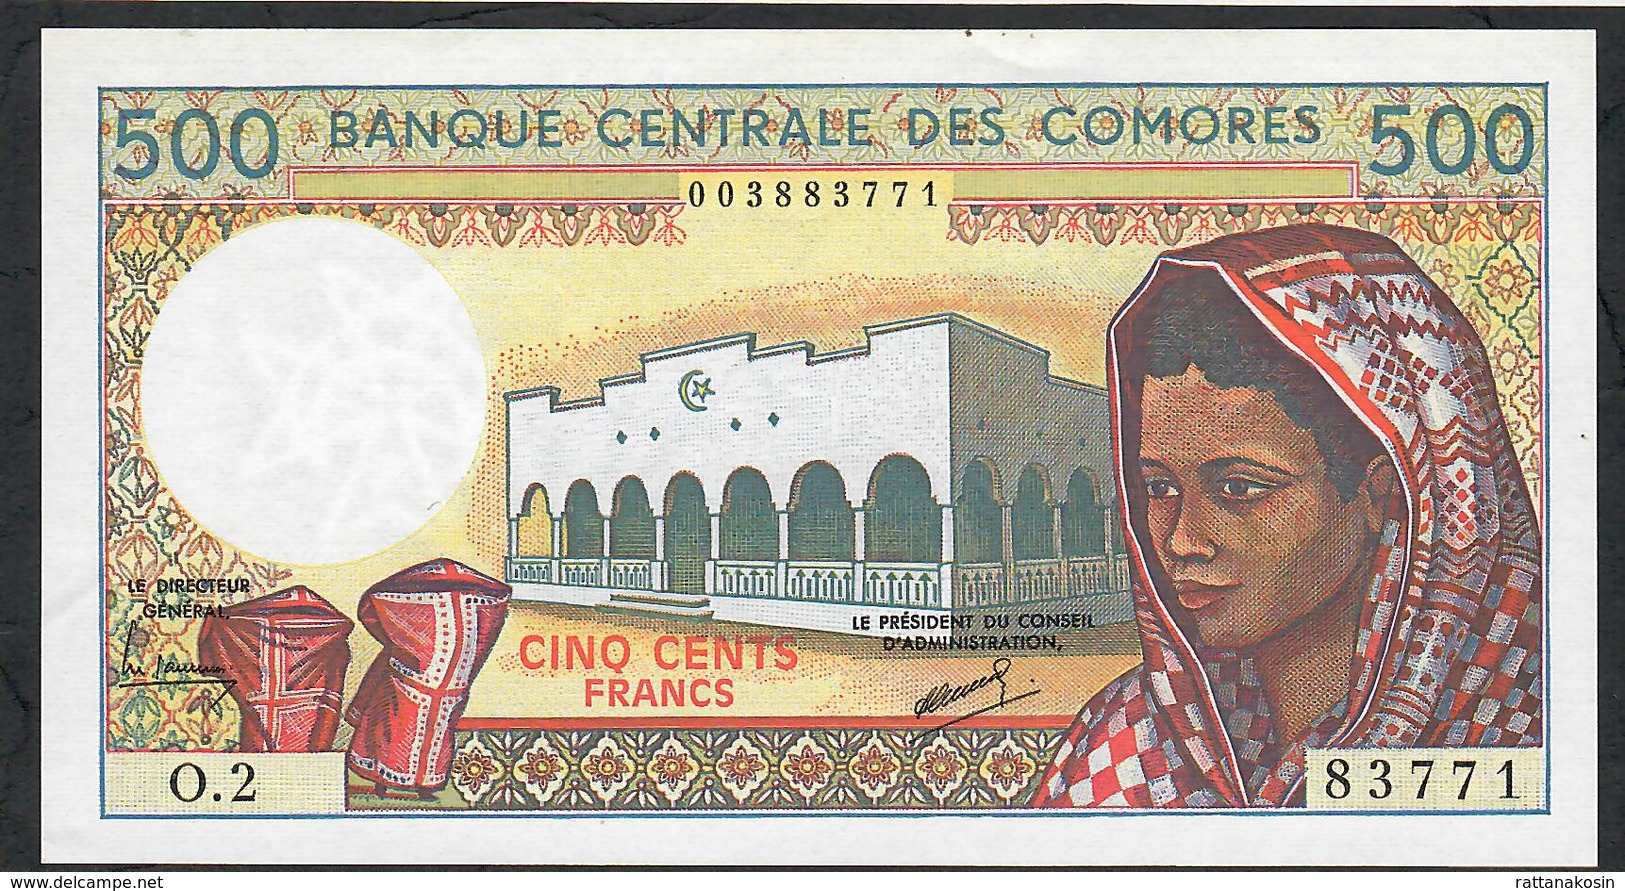 COMORES ERROR P10b INVERTED WATERMARK 500 FRANCS 1986 #O.2 Signature 2   UNC. - Comoren